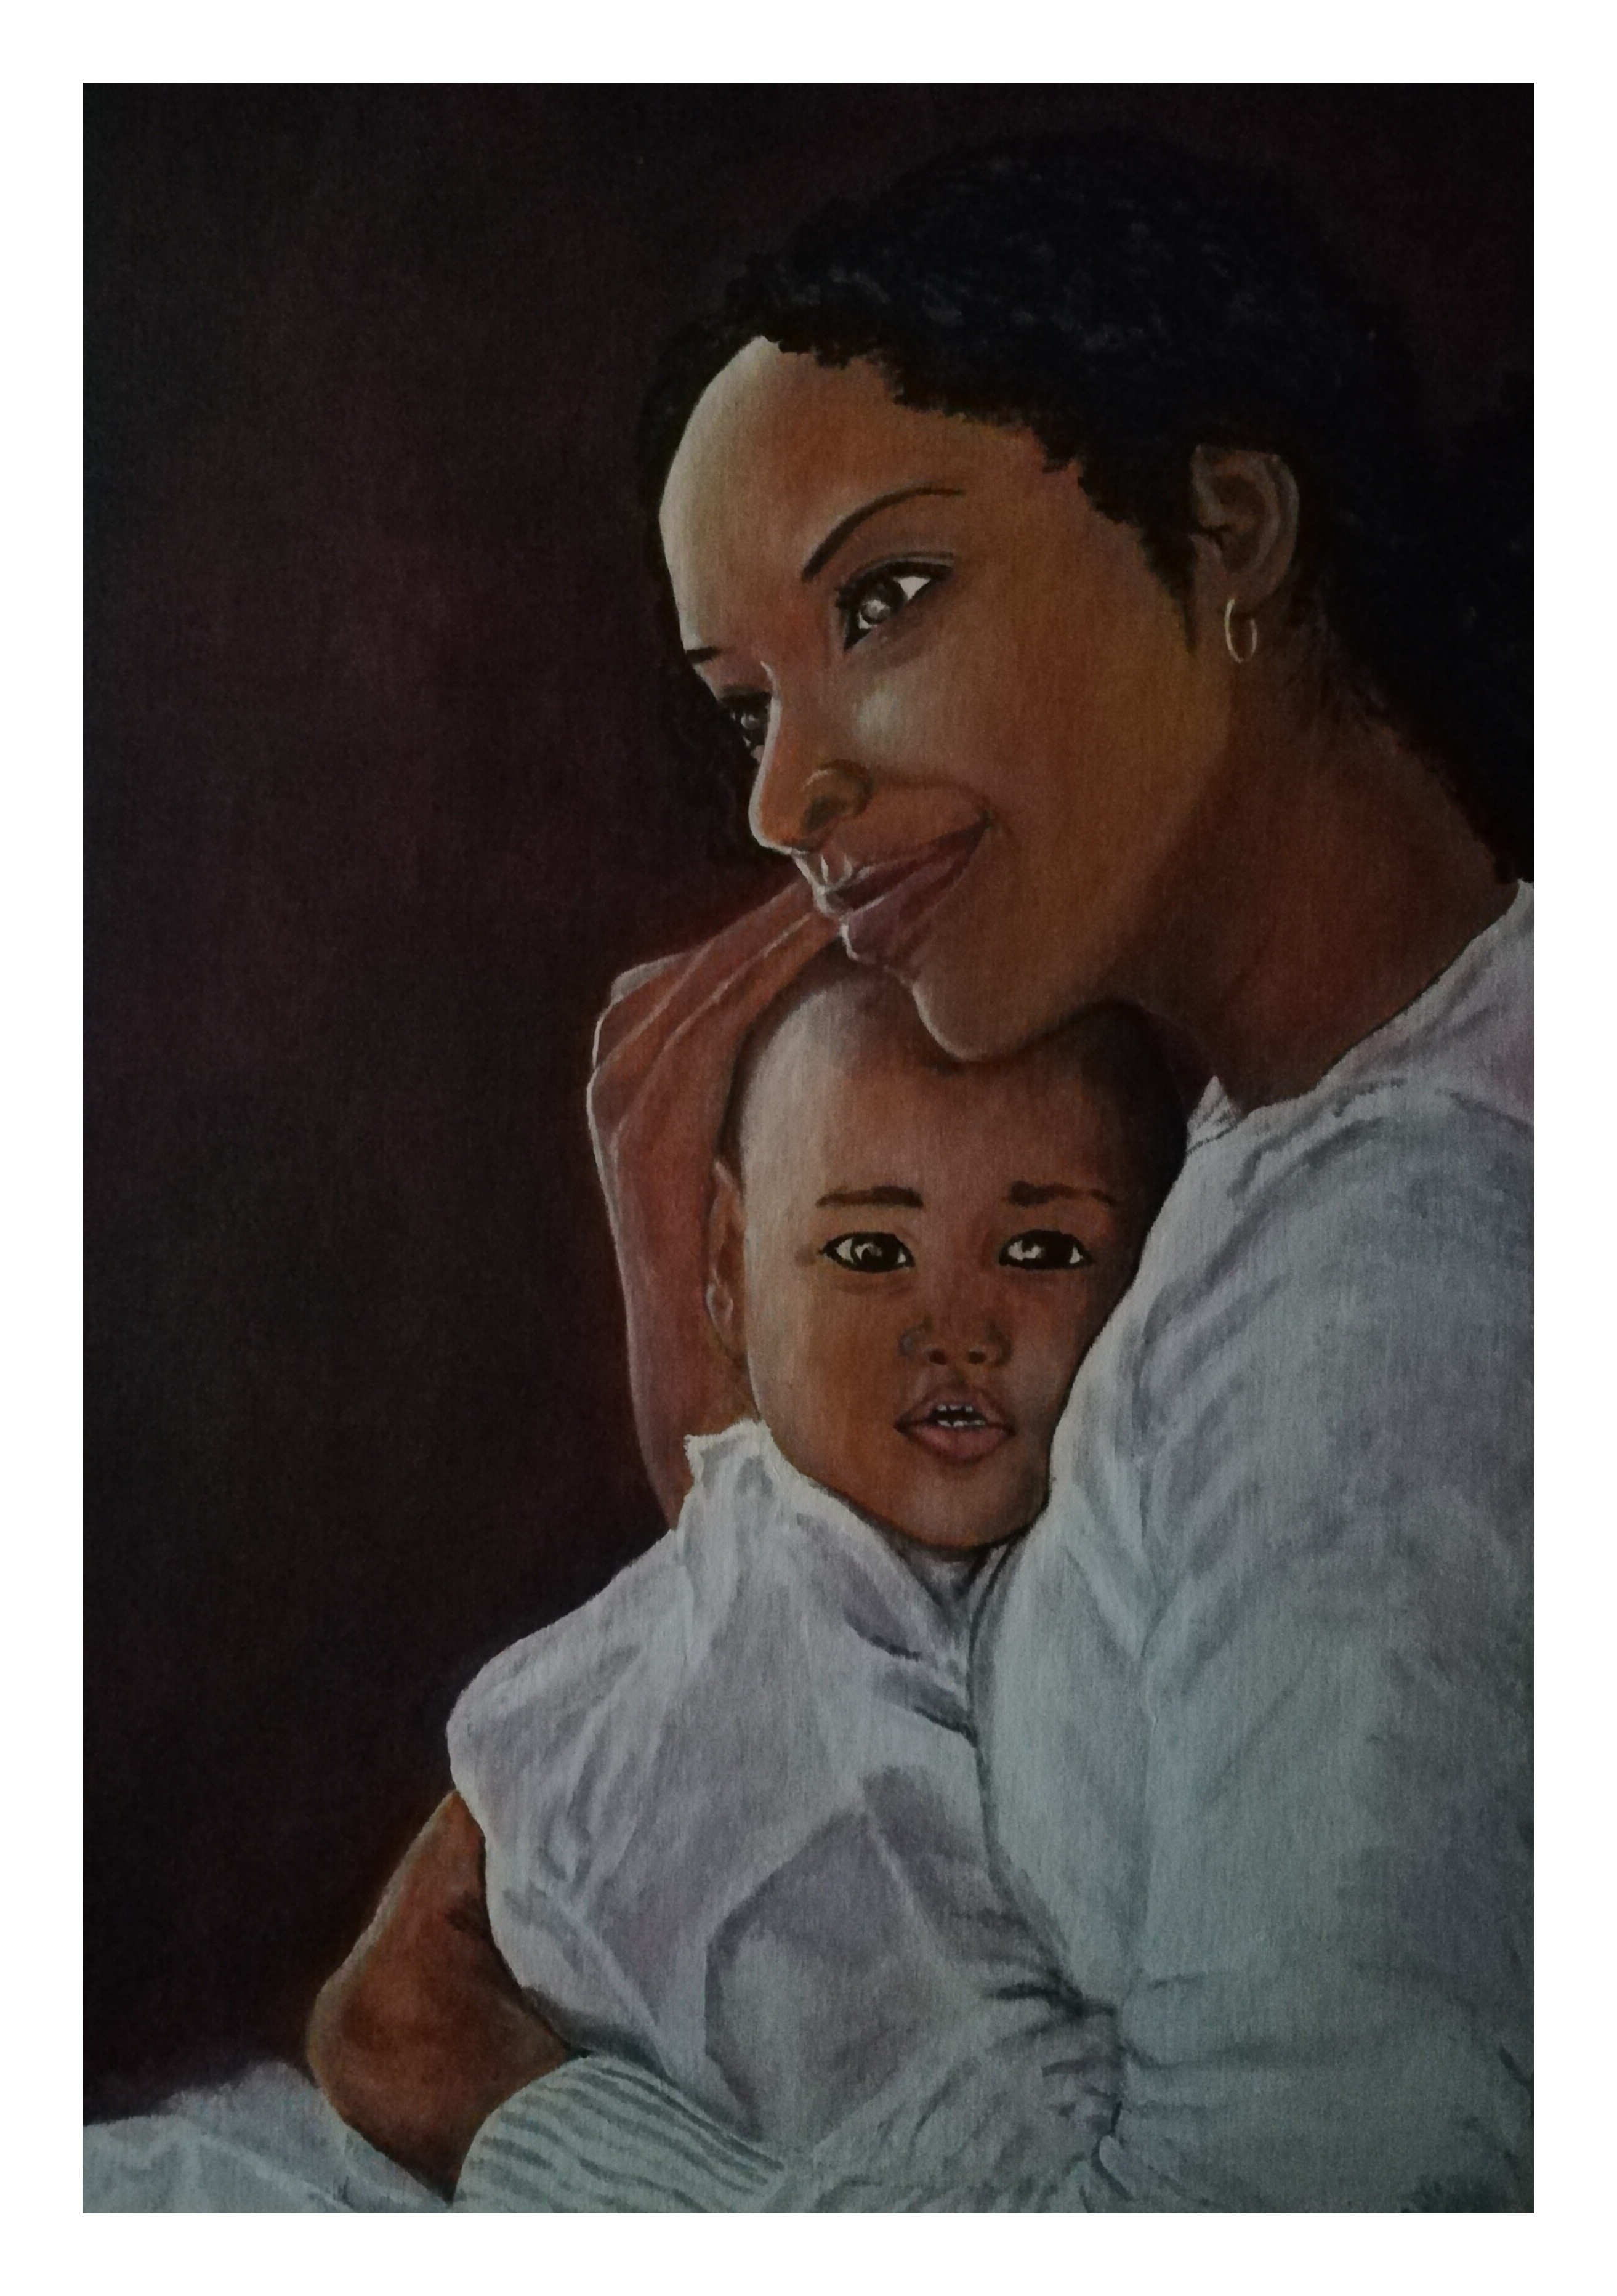 Mother's Love by Rasika Pathirana